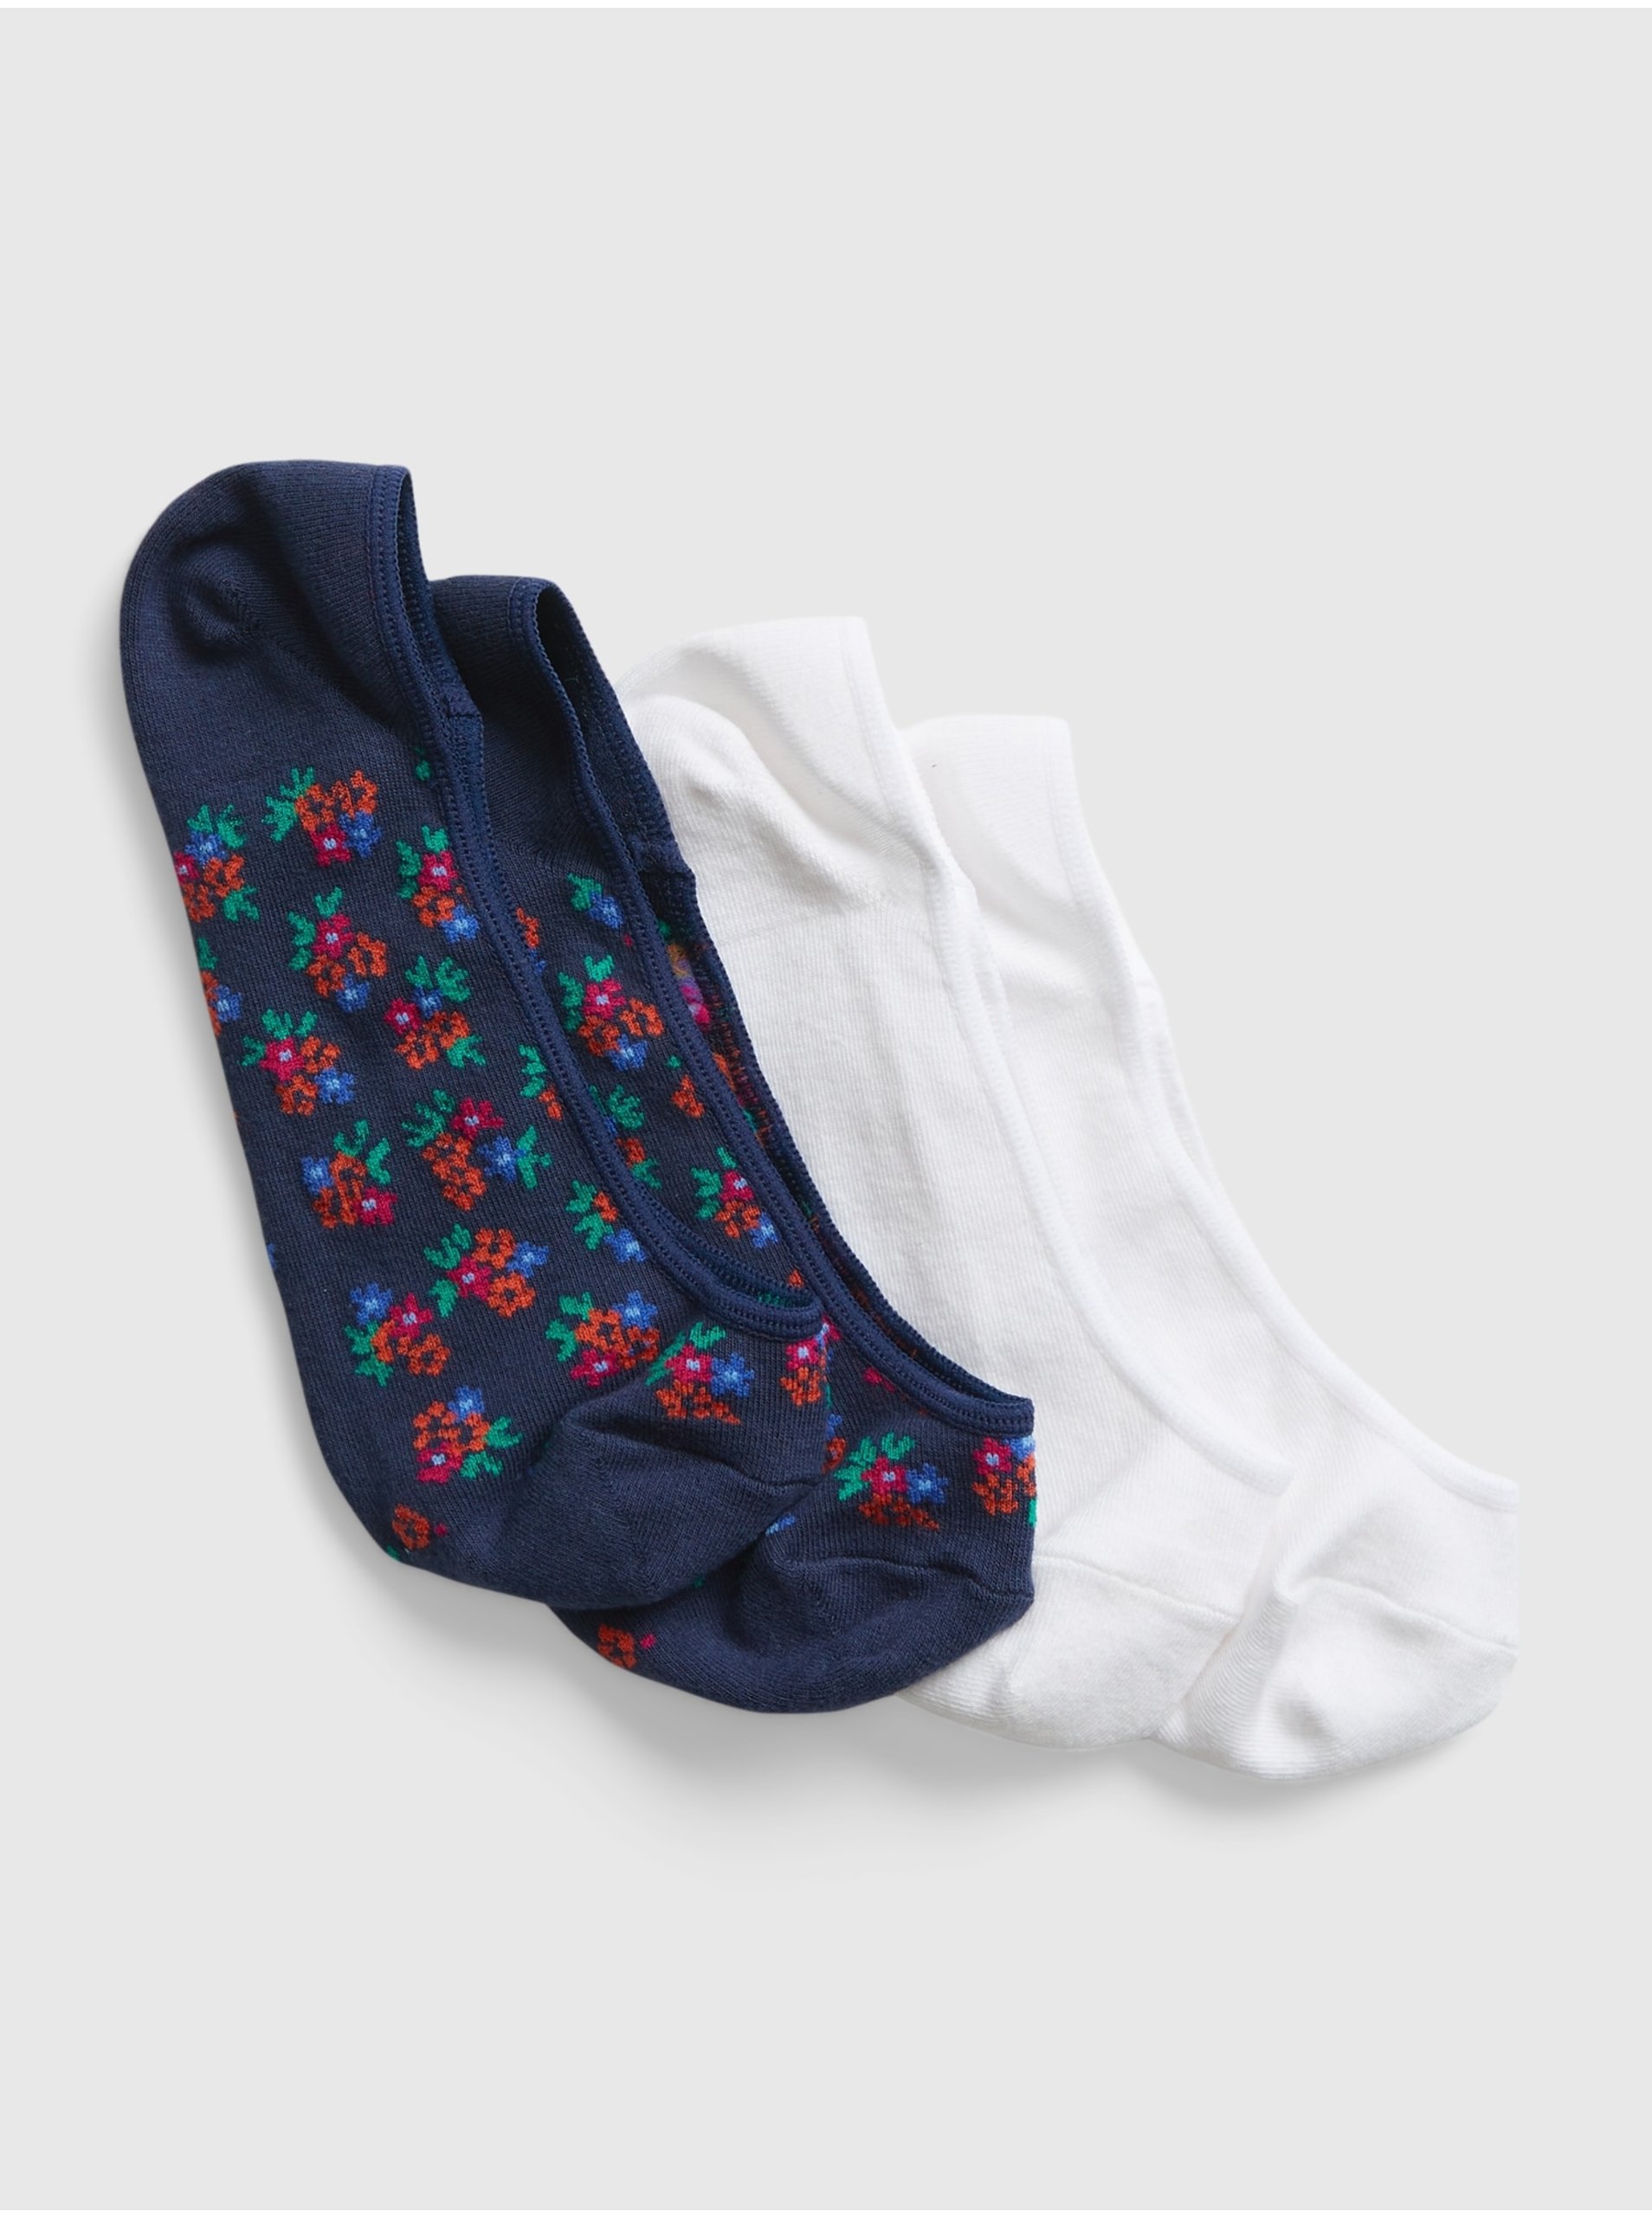 E-shop Modré dámske ponožky nízke GAP, 2 páry